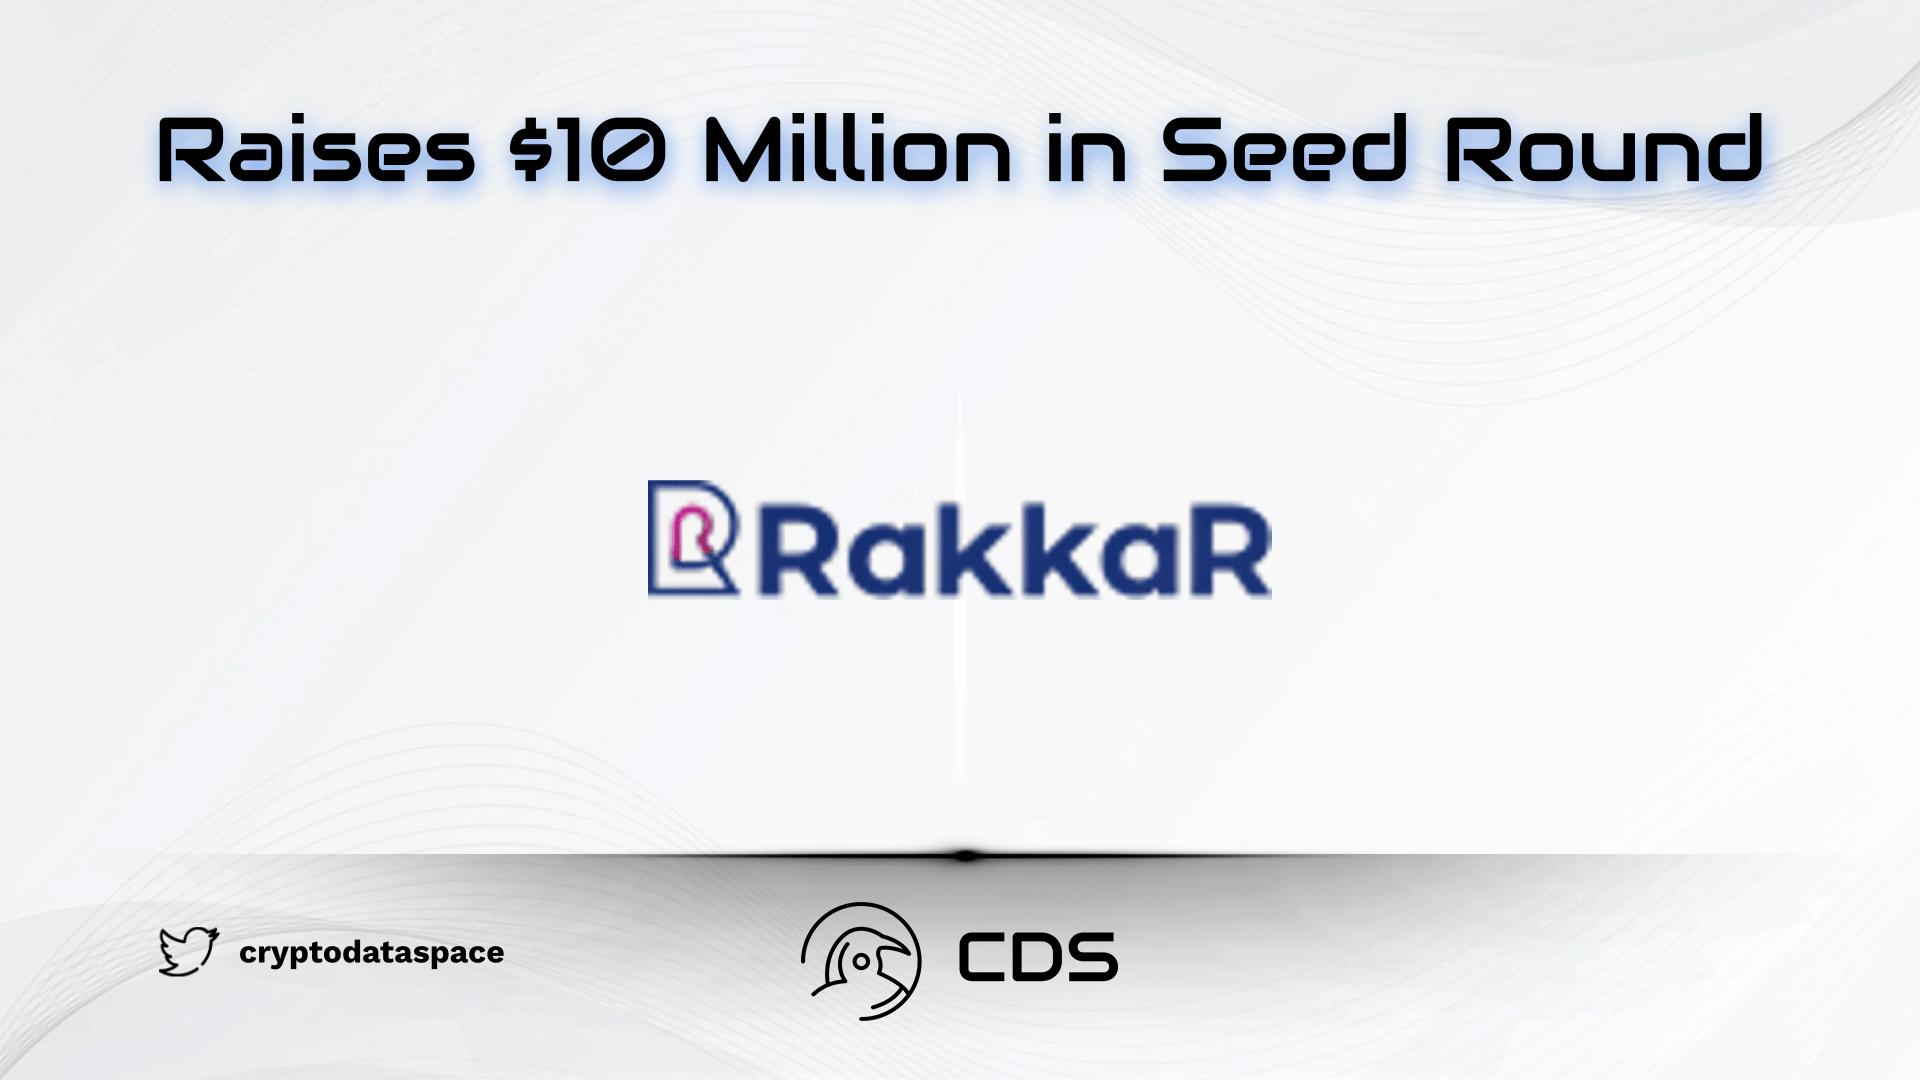 Rakkar Digital Raises $10 Million